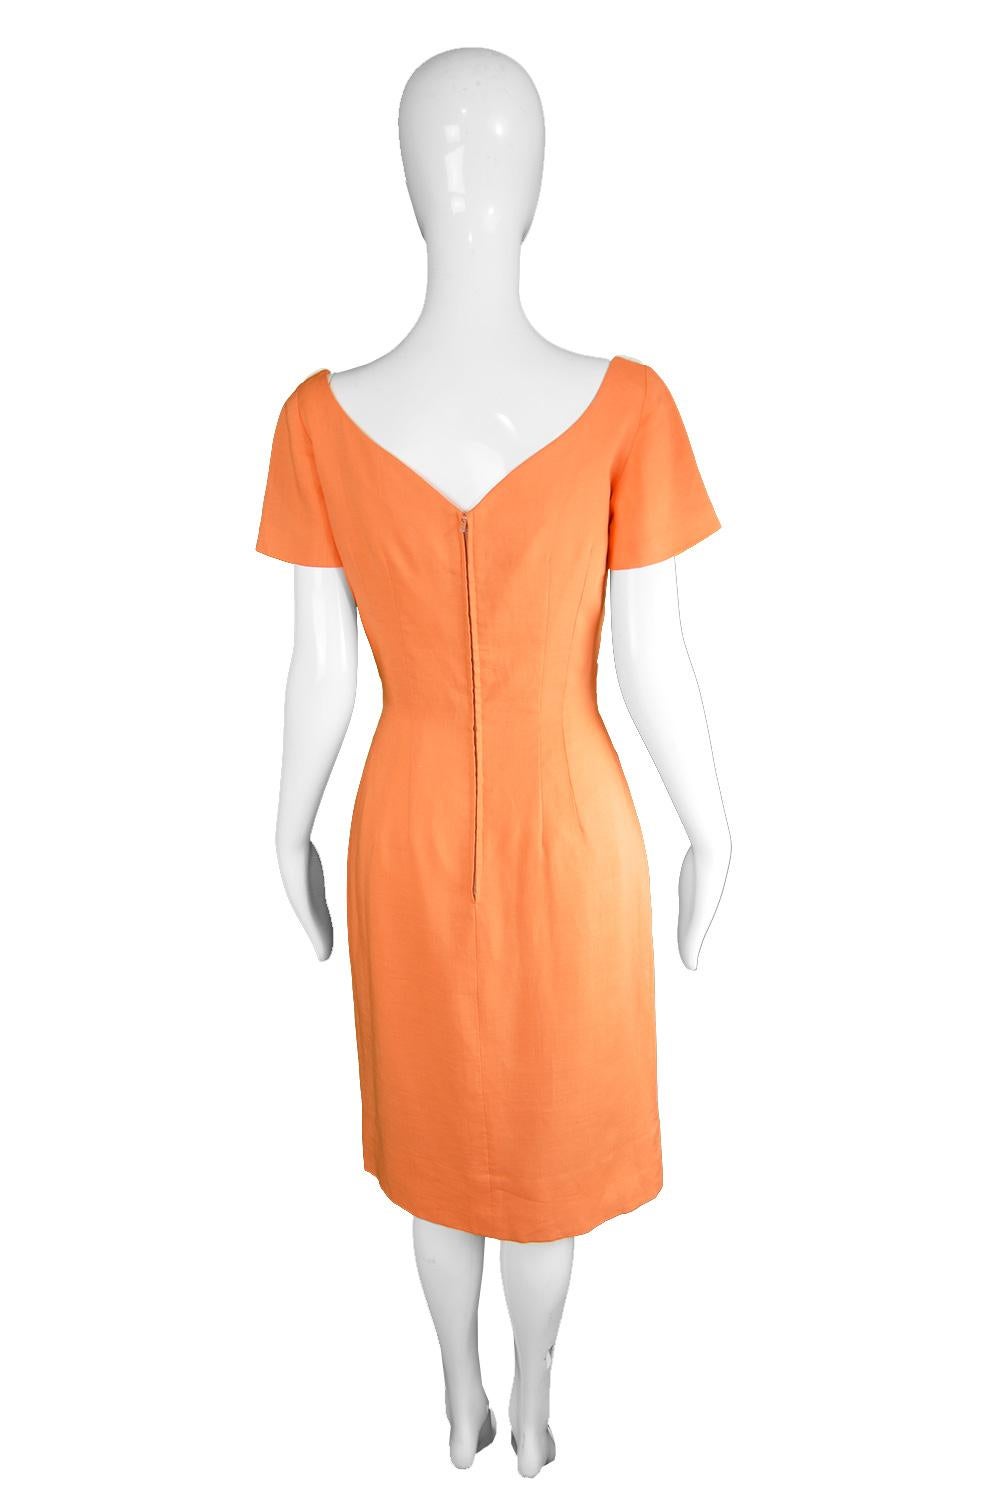 Oleg Cassini Vintage Orange, White & Yellow Linen Short Sleeve Mod Dress, 1960s For Sale 3